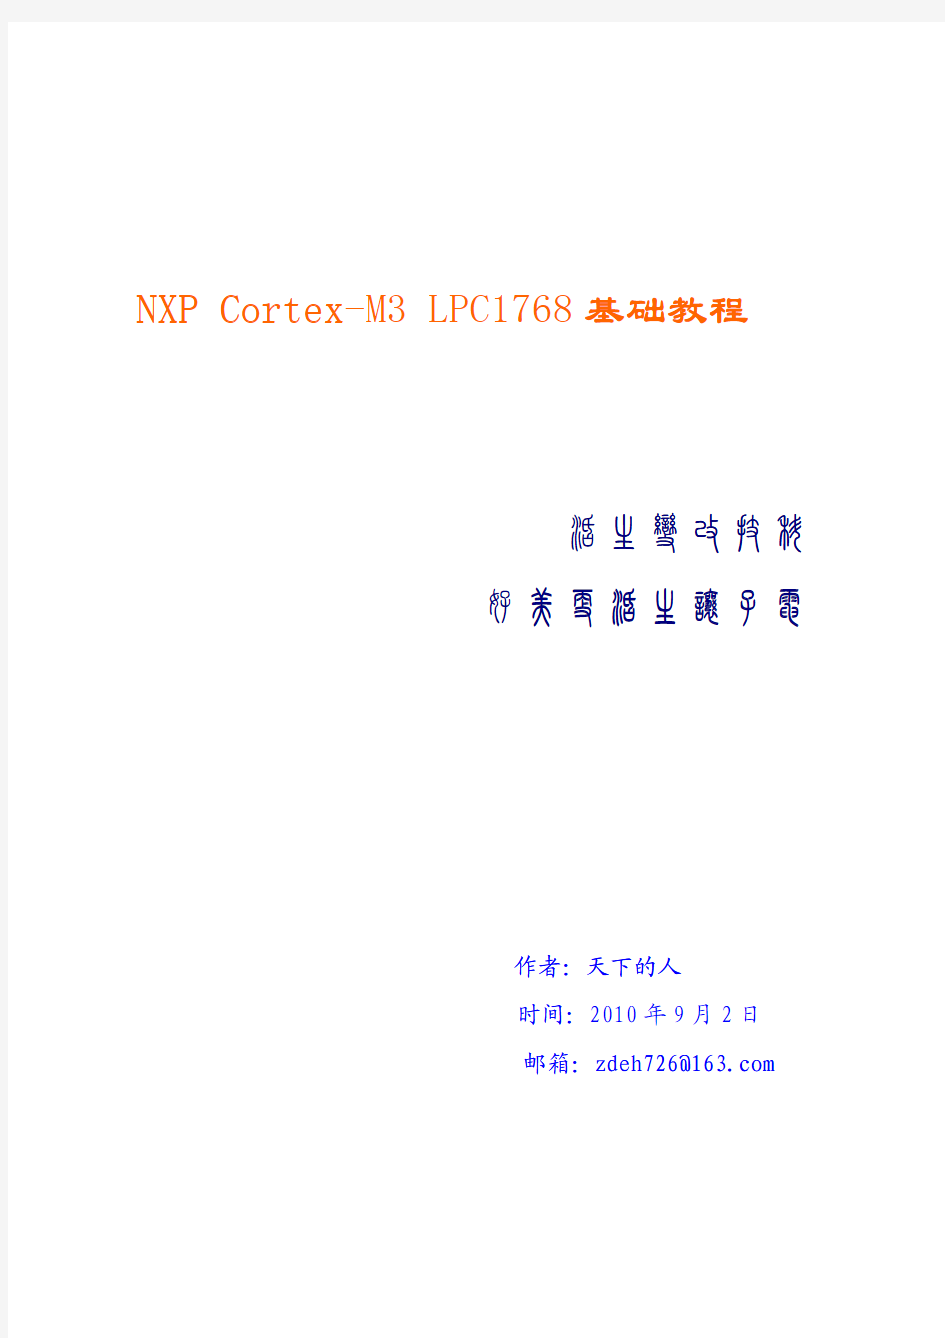 NXP Cortex-M3 LPC1768基础教程